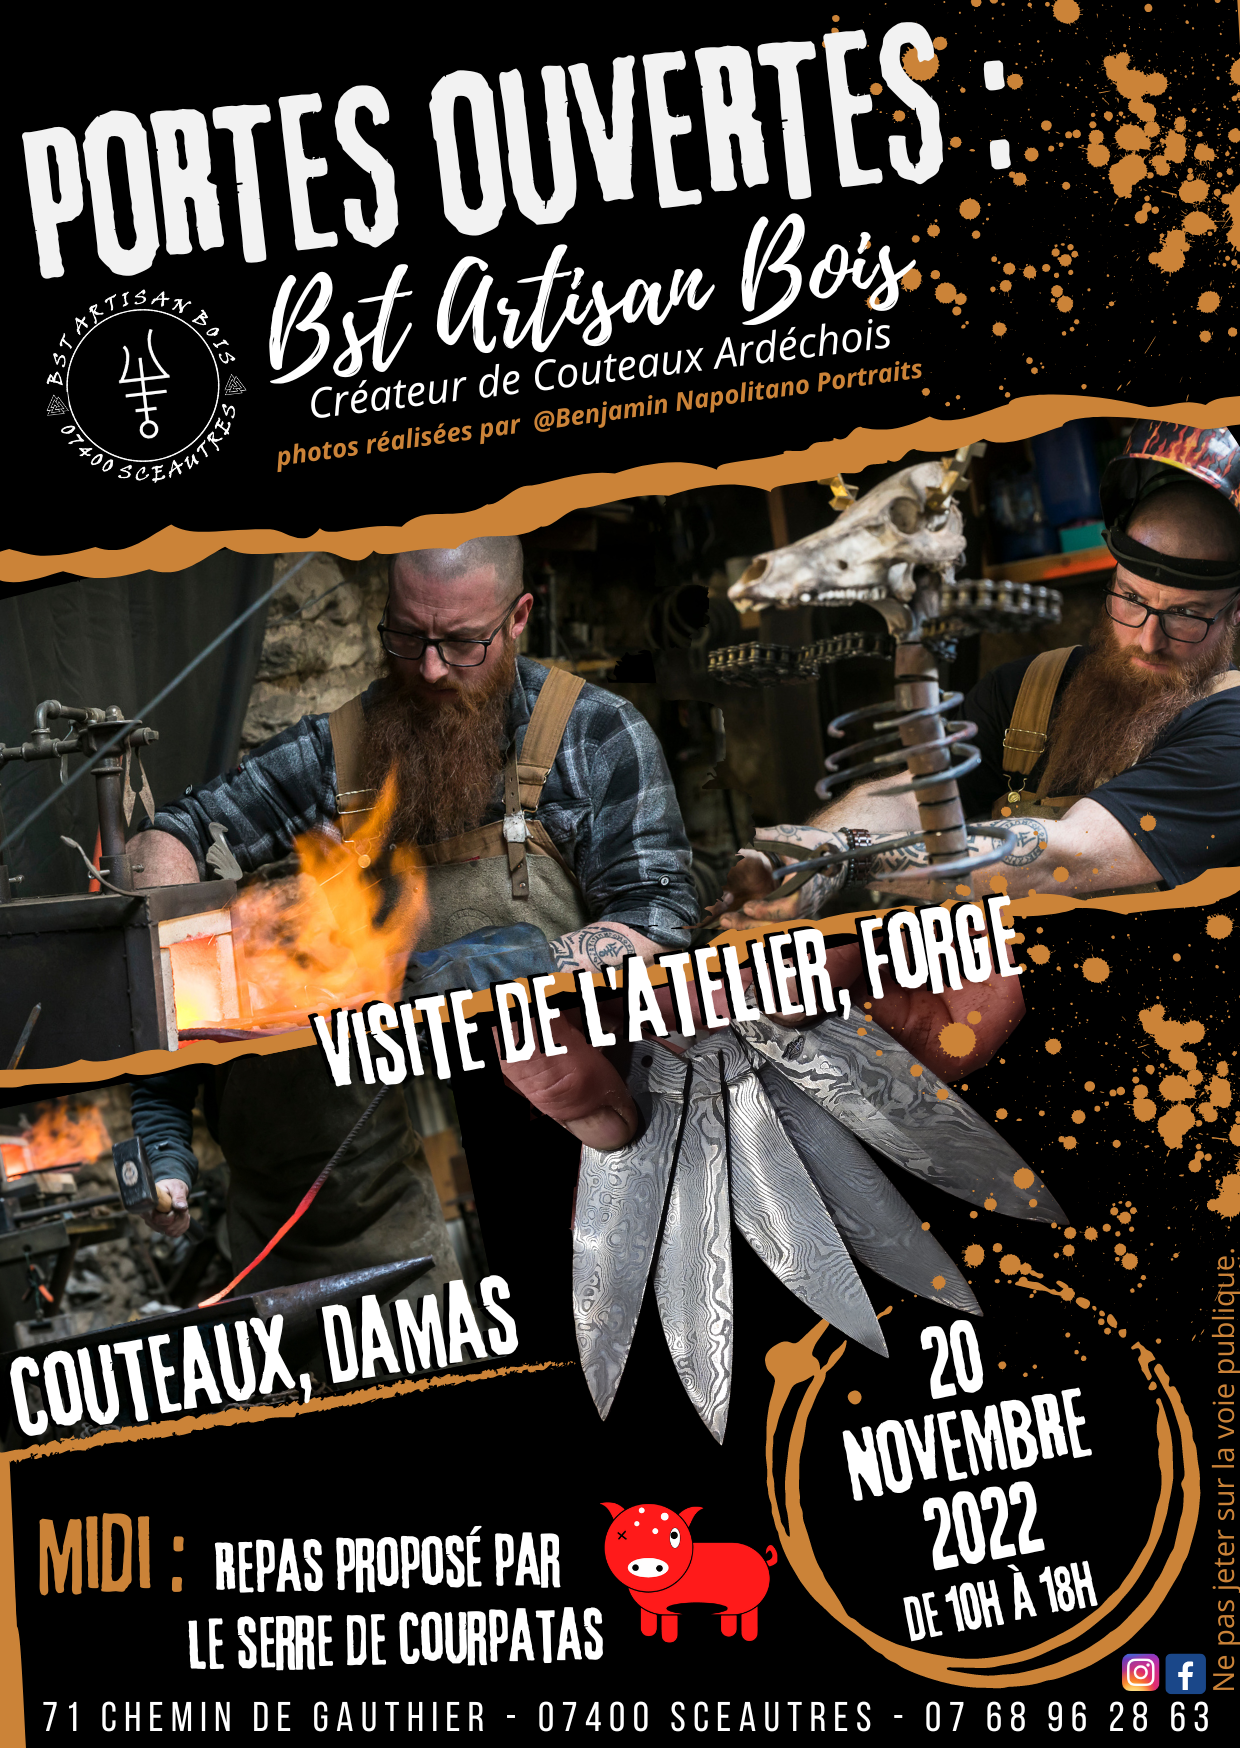 Dimanche 20 Novembre Portes Ouvertes chez BST Artisan Bois Créateur de Couteaux Ardéchois